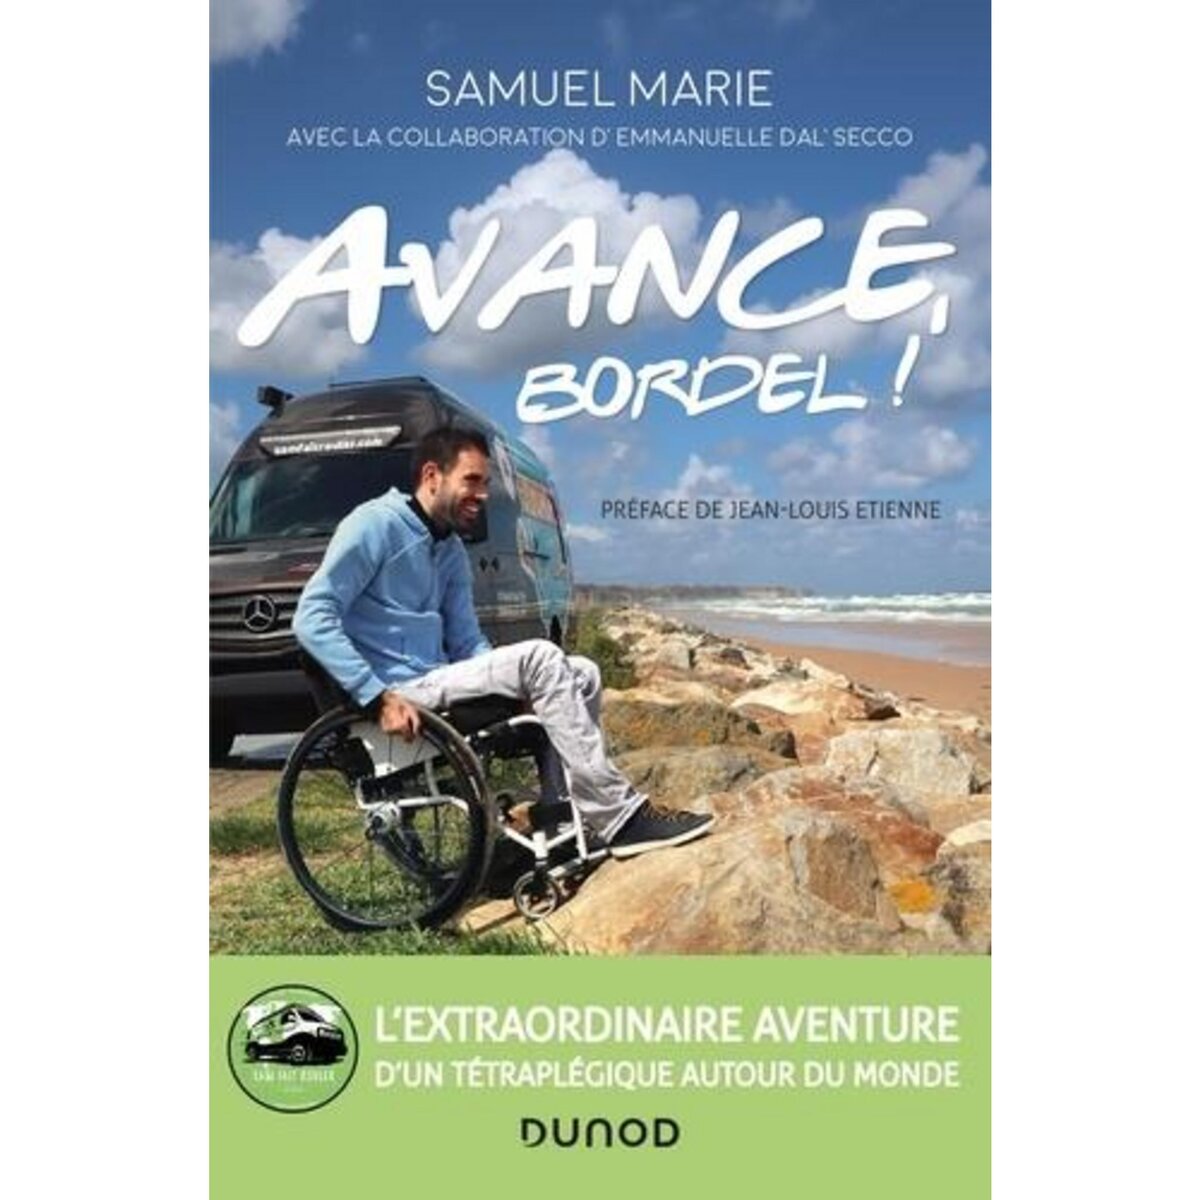  AVANCE, BORDEL !, Marie Samuel